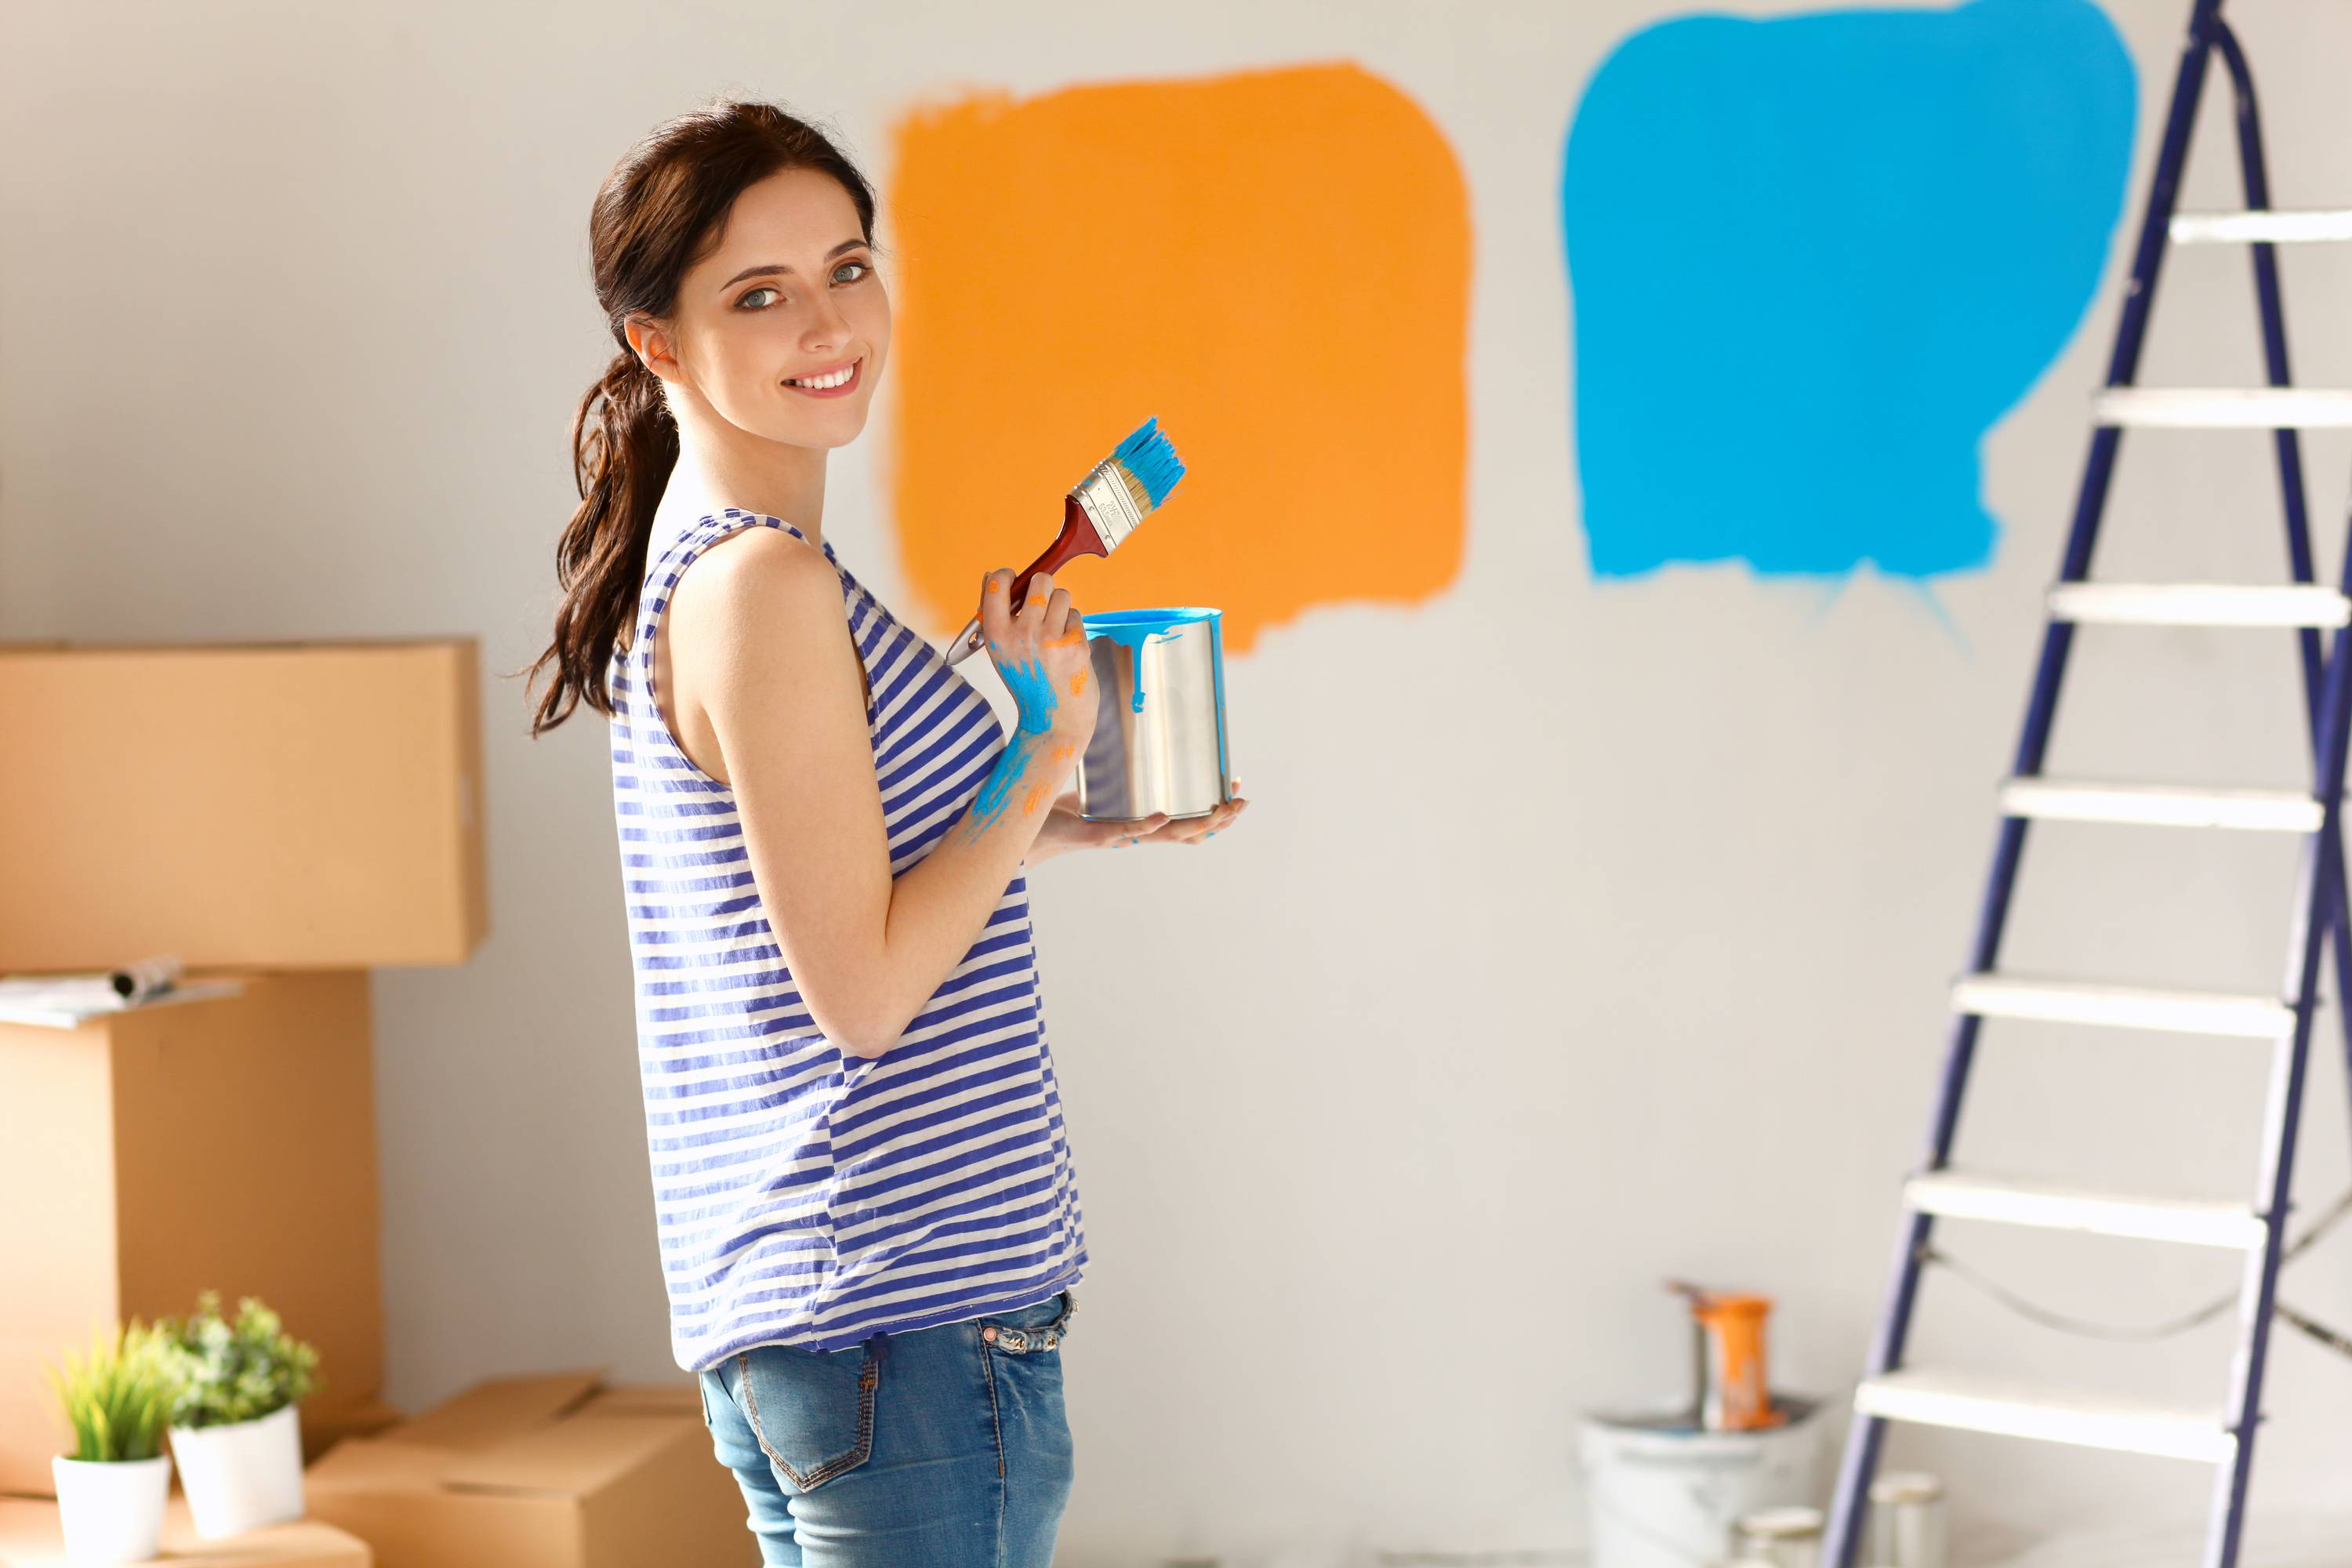 В какой цвет покрасить стены в спальне, коридоре, гостинной комнате, зале: выбор палитры краски (фото)